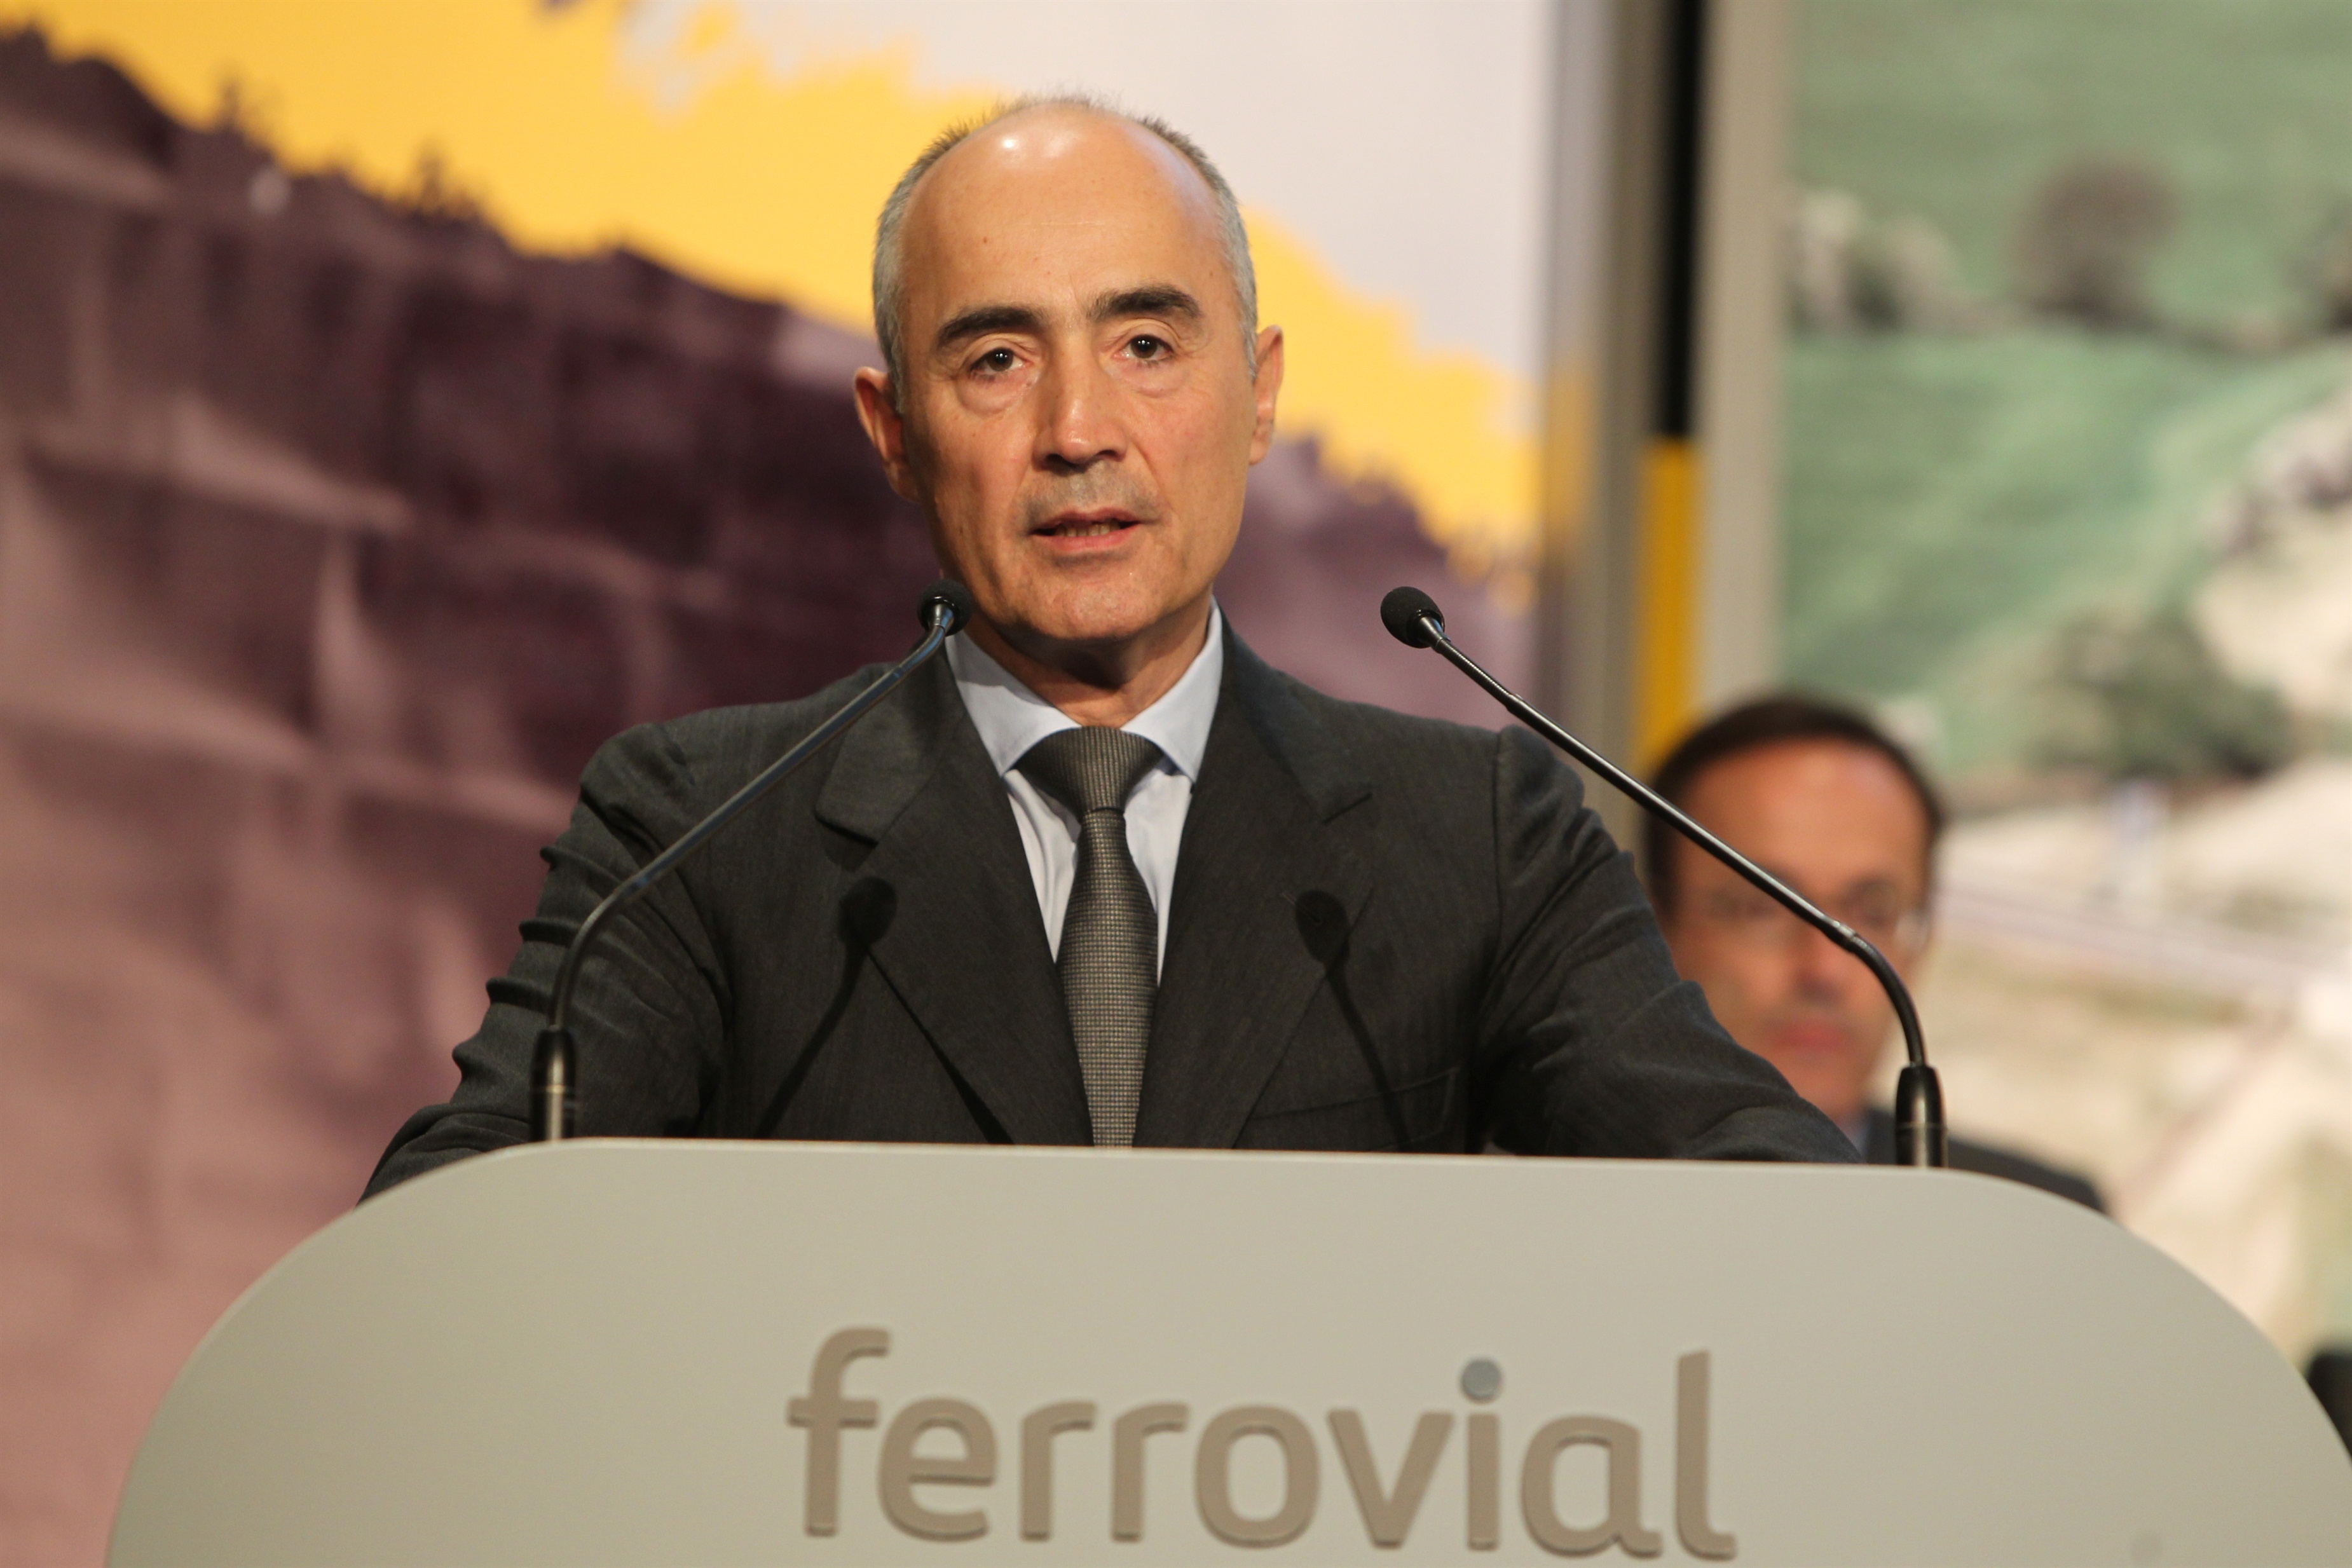 Ferrovial destina el 0,14% del capital a pagar en acciones parte del variable de la alta dirección